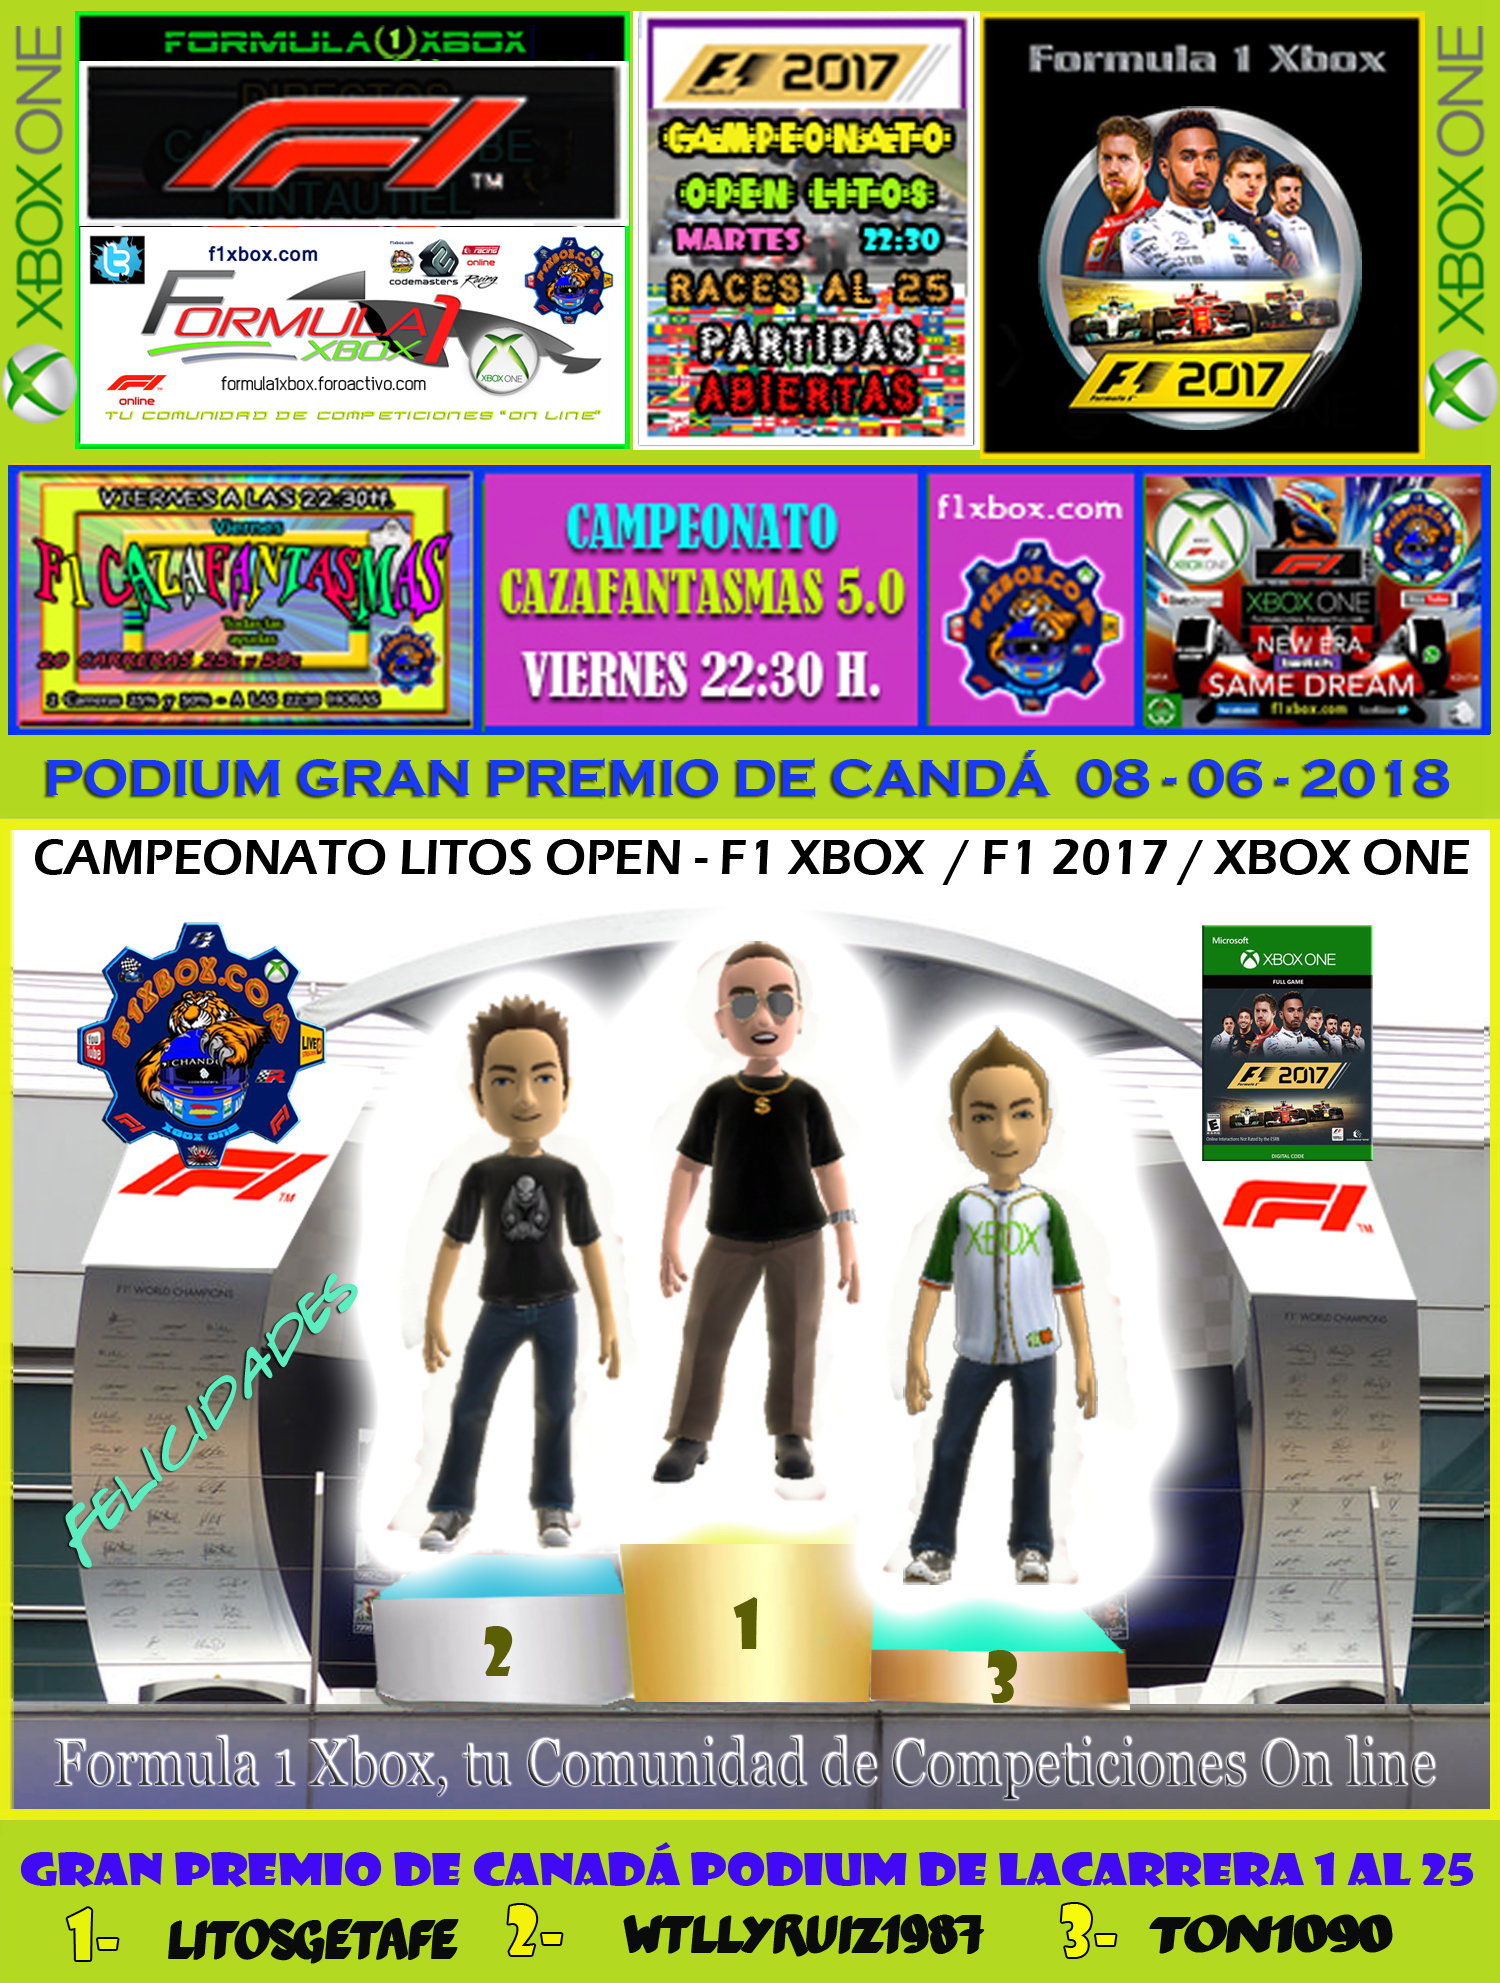 F1 2017 - XBOX ONE  /  CAMPEONATO CAZAFANTASMAS 5.0 - F1 XBOX / RESULTADOS Y PODIUMS DE LAS 2 CARRERAS EN CANADÁ / VIERNES 08-06-2018. Carrer10